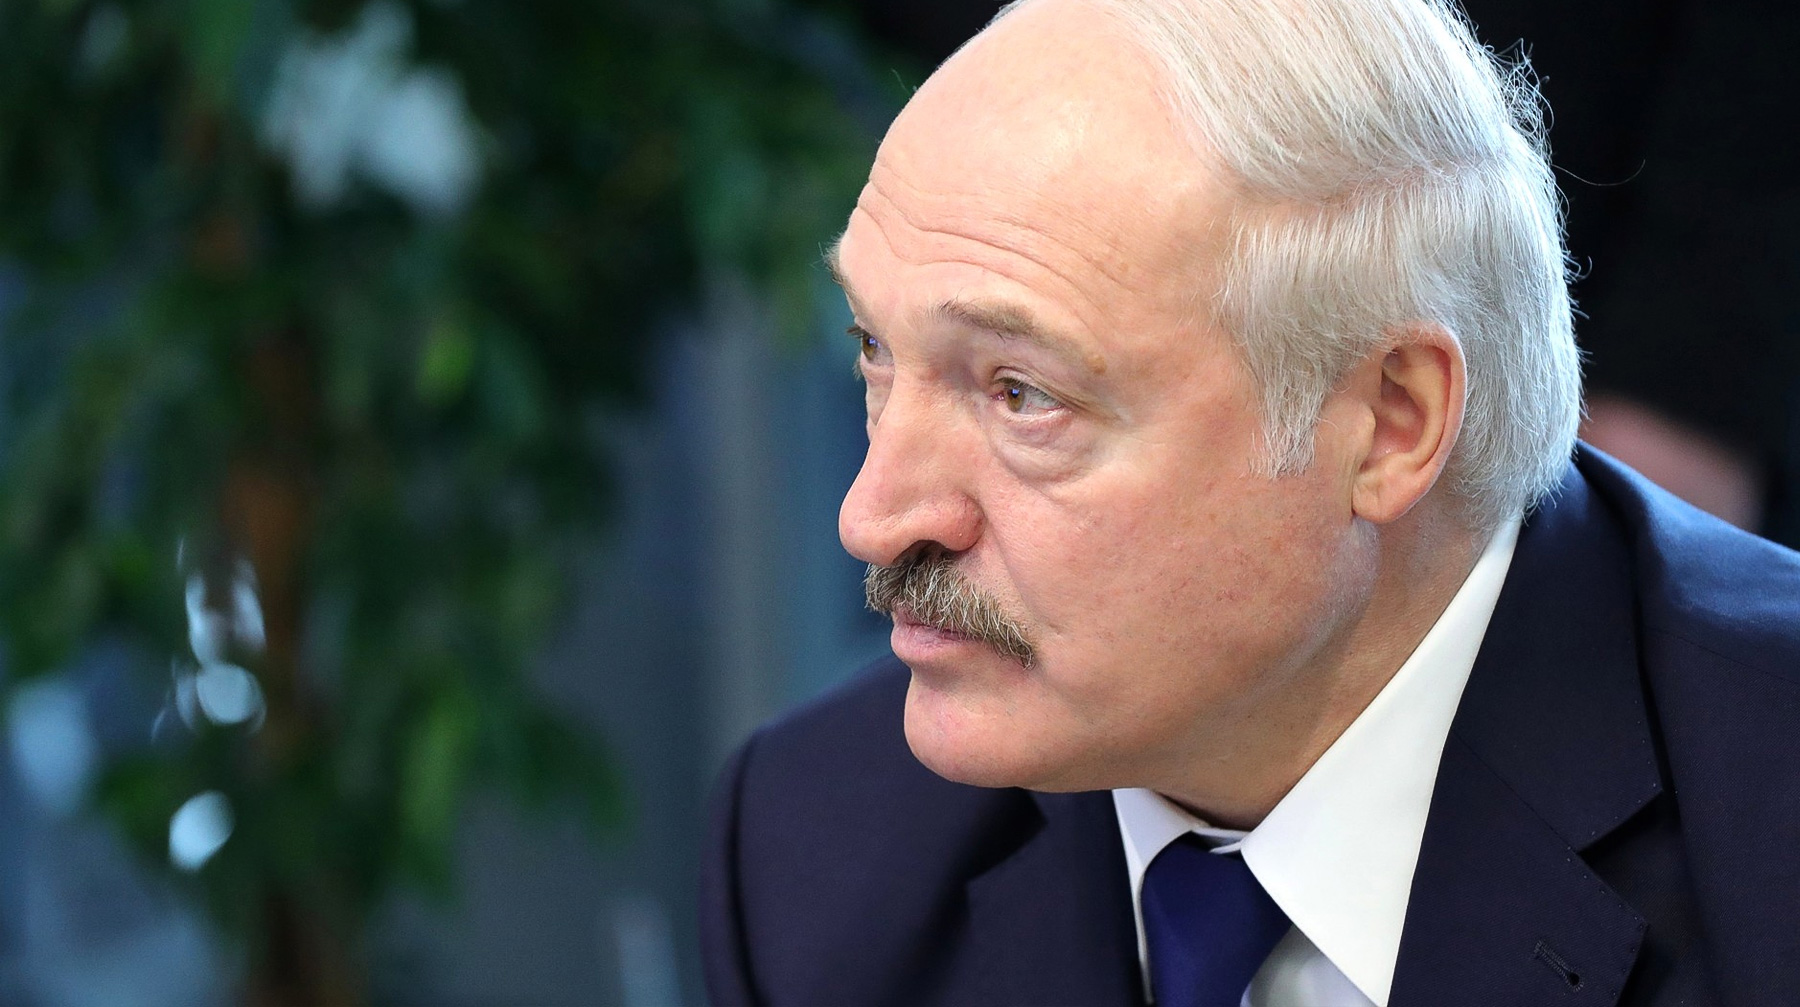 Белорусский лидер также обвинил РФ в незнании «проблем младшего брата» и попросил не считать его страну нахлебницей Президент Белоруссии Александр Лукашенко